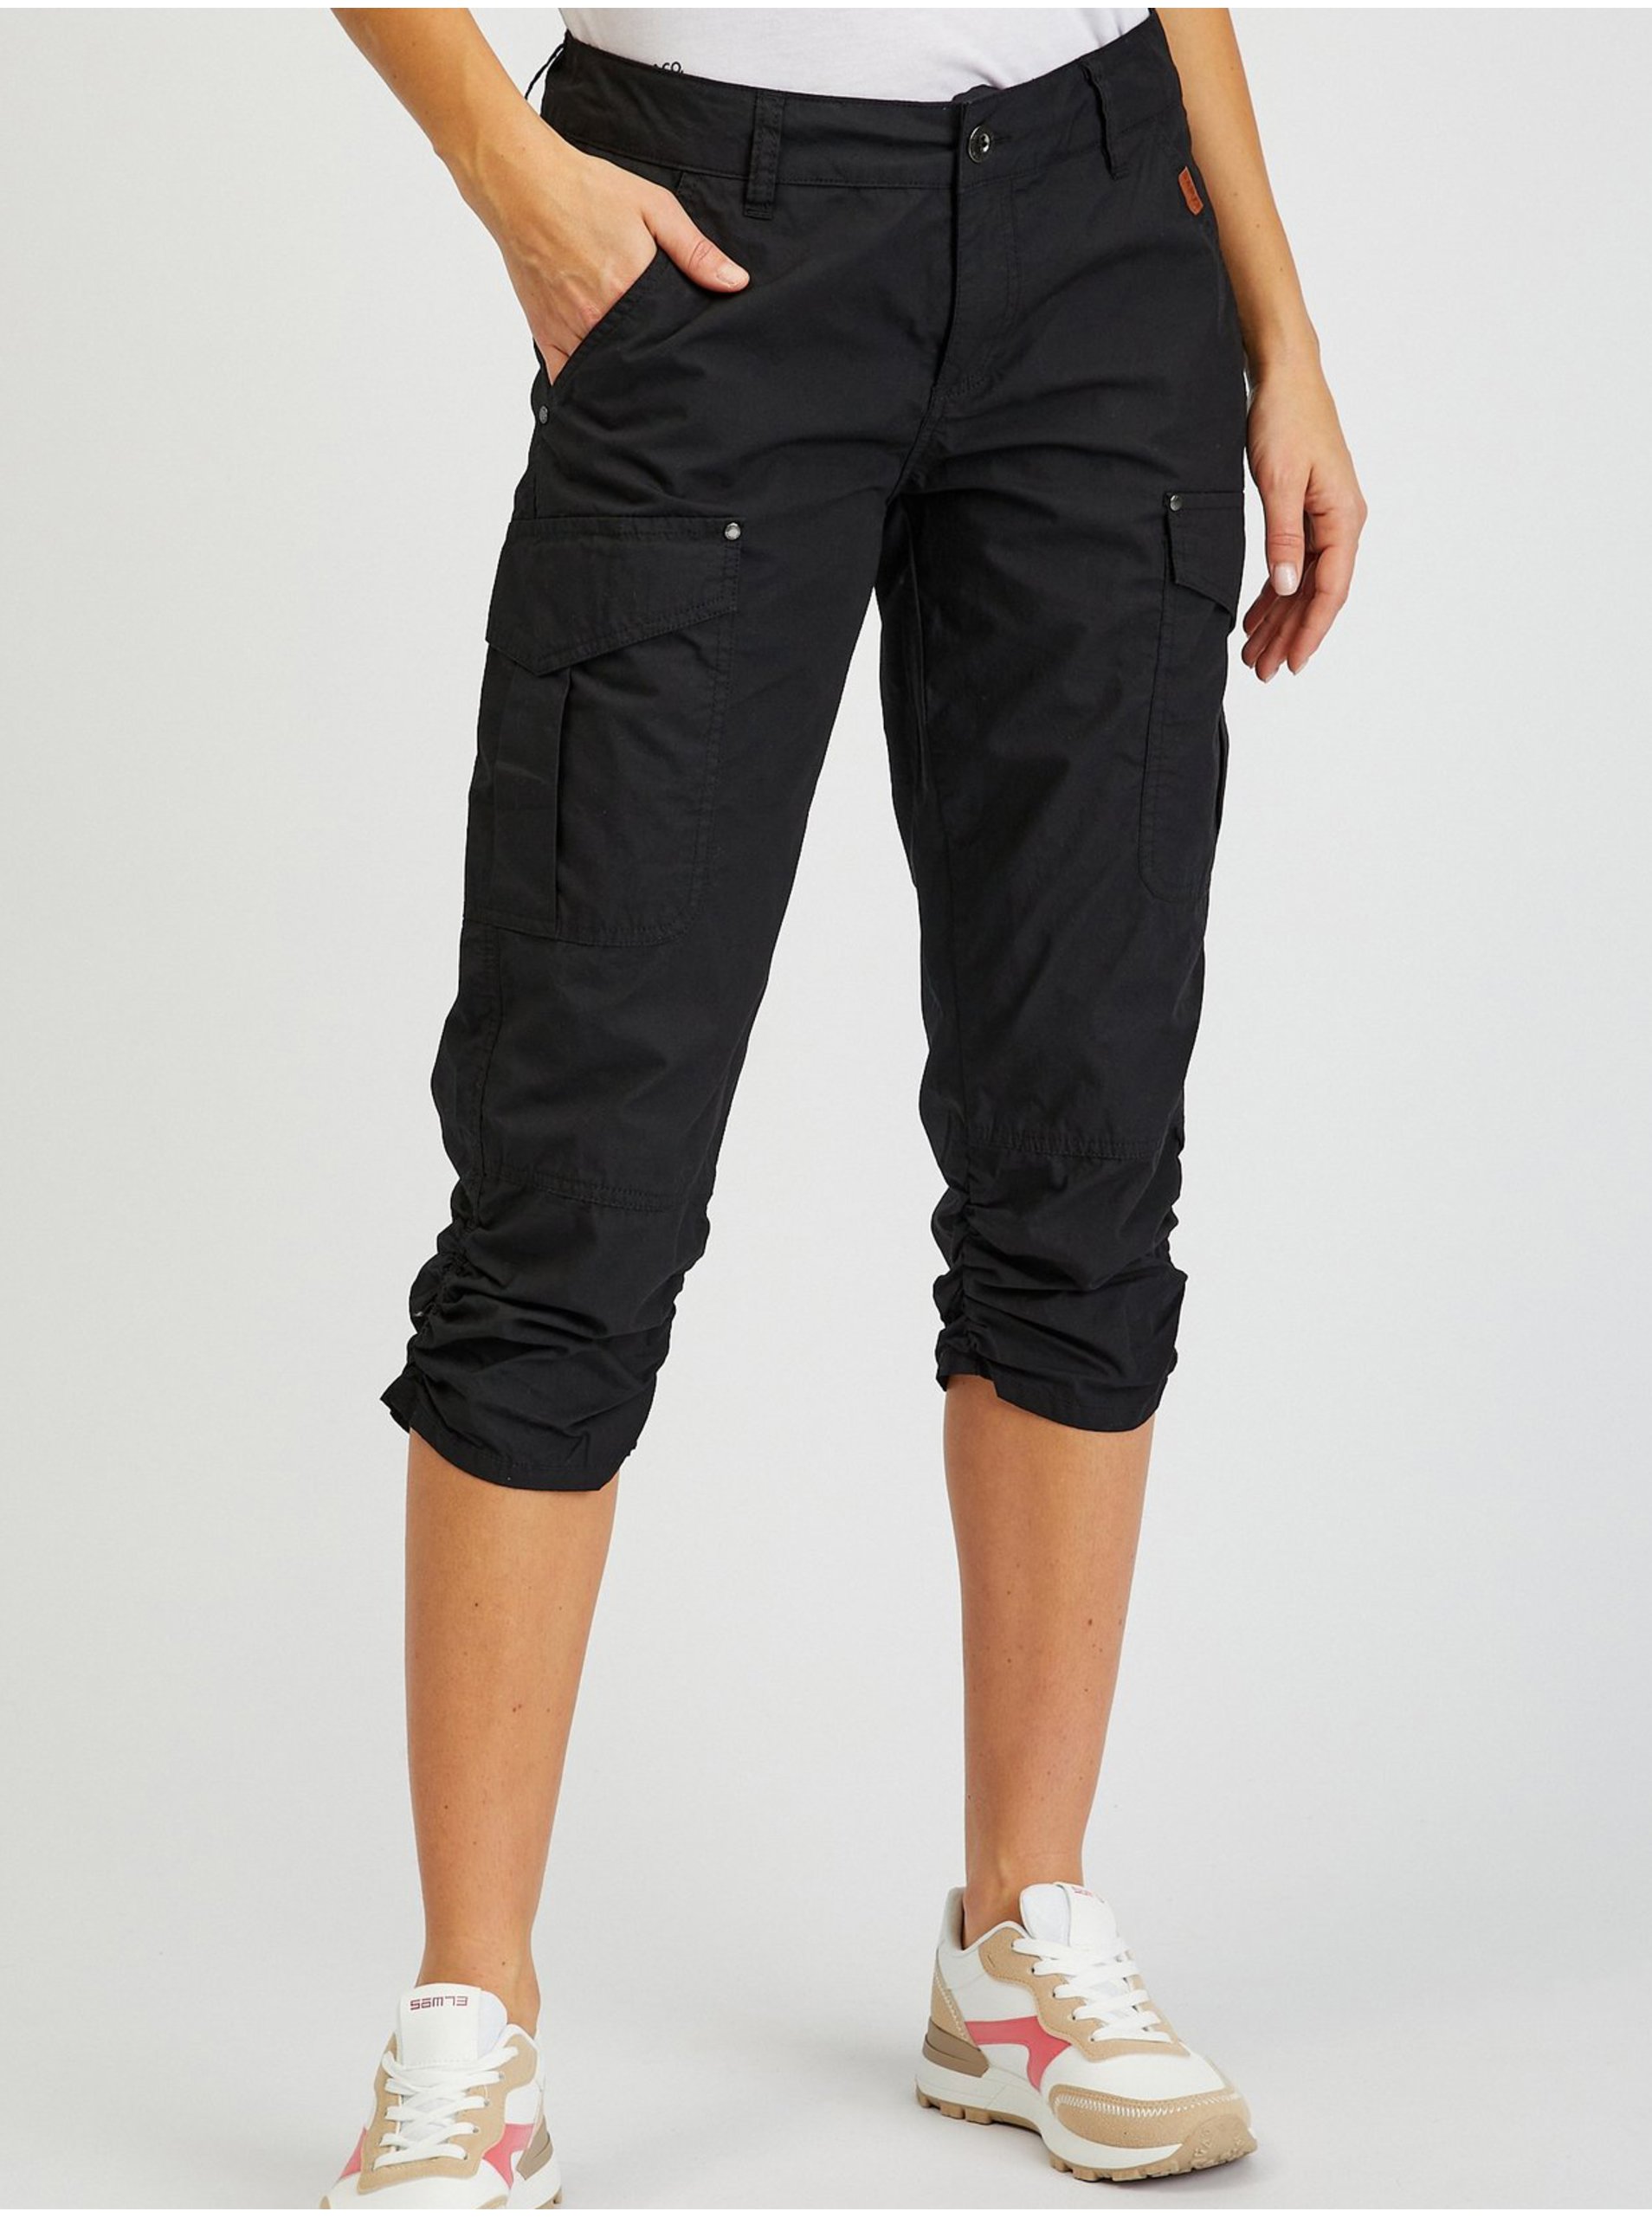 Levně Černé dámské tříčtvrteční kalhoty SAM73 Fornax